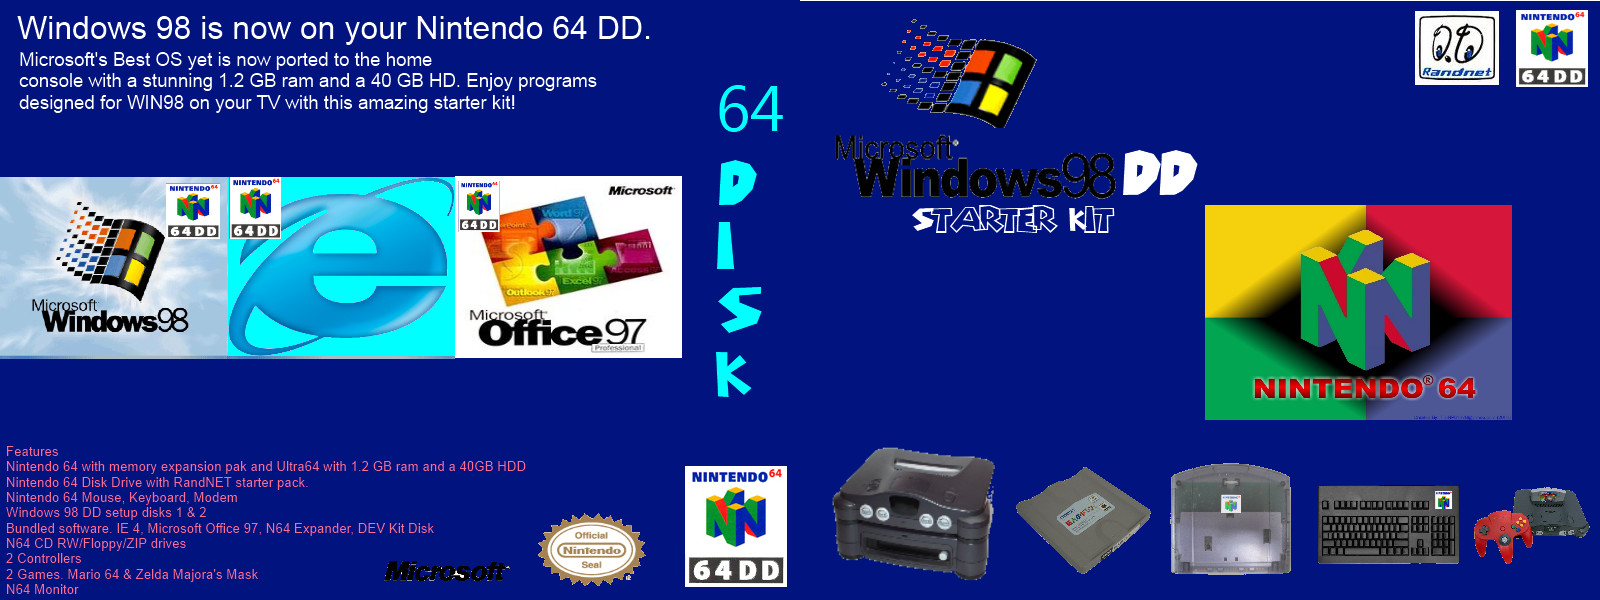 Windows 98 DD box cover